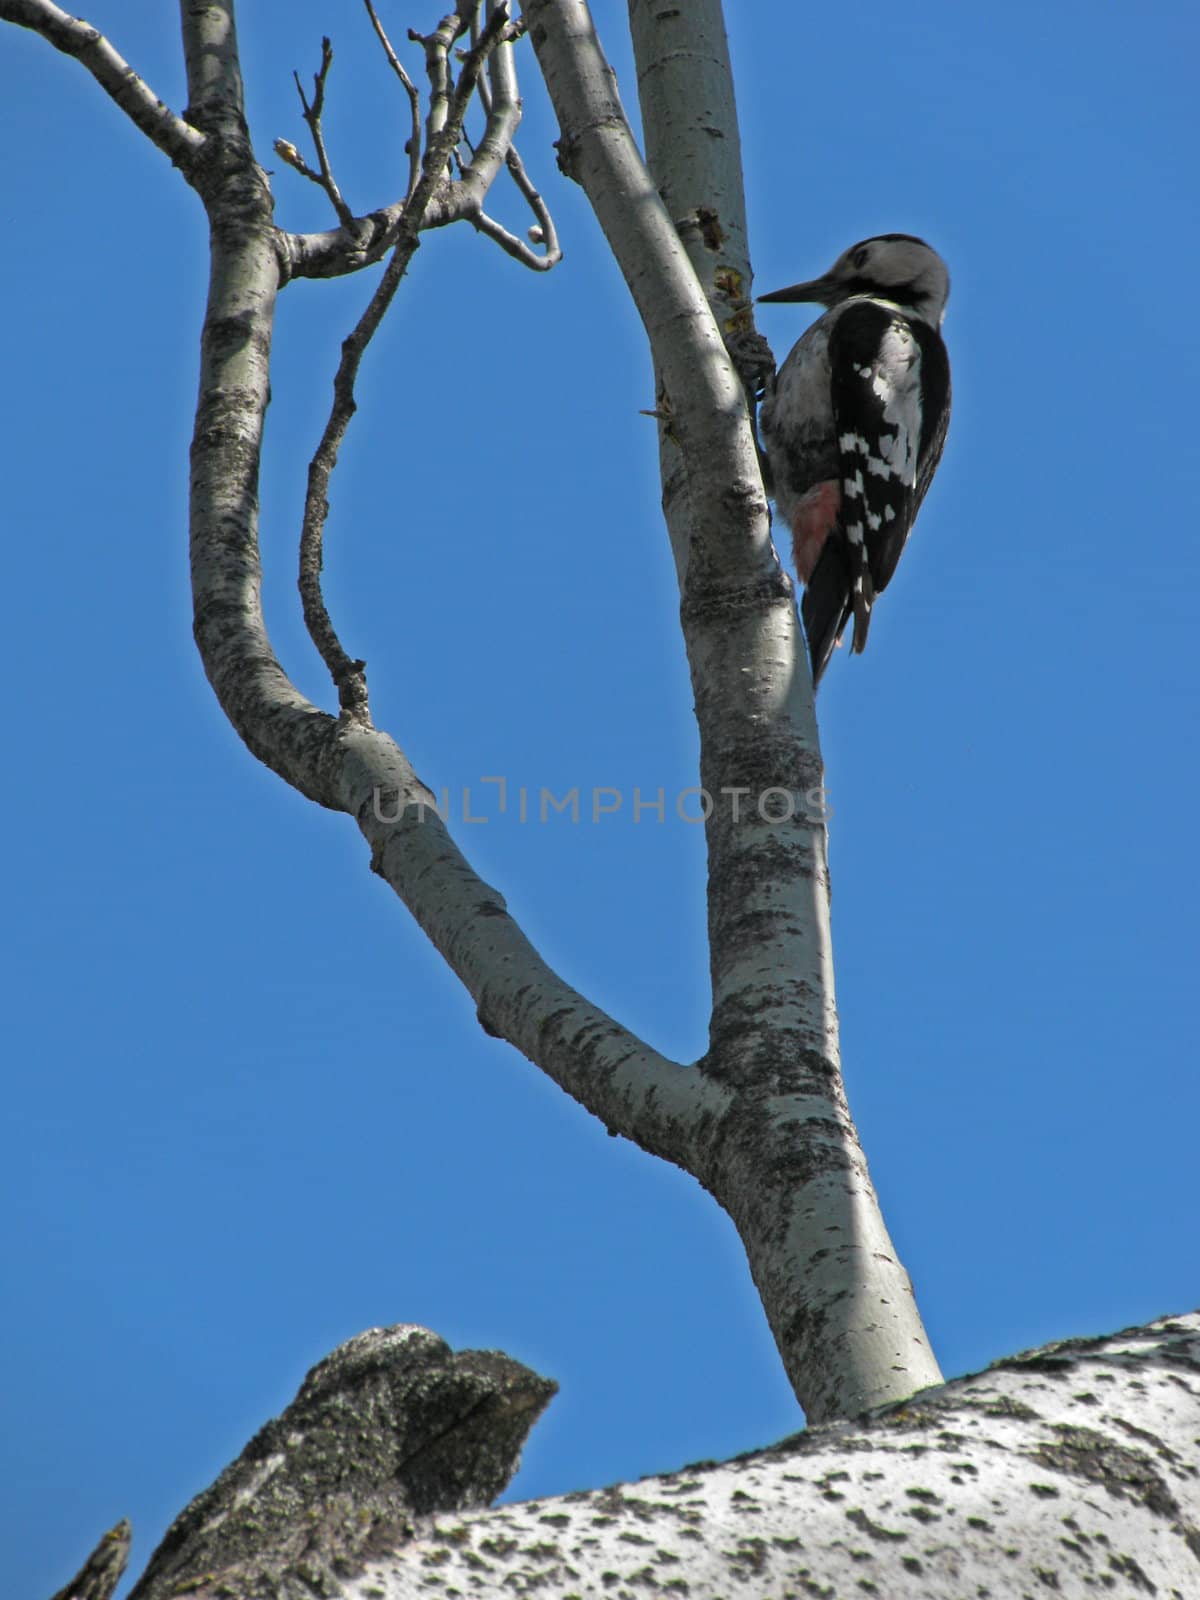 woodpecker on a branch of tree